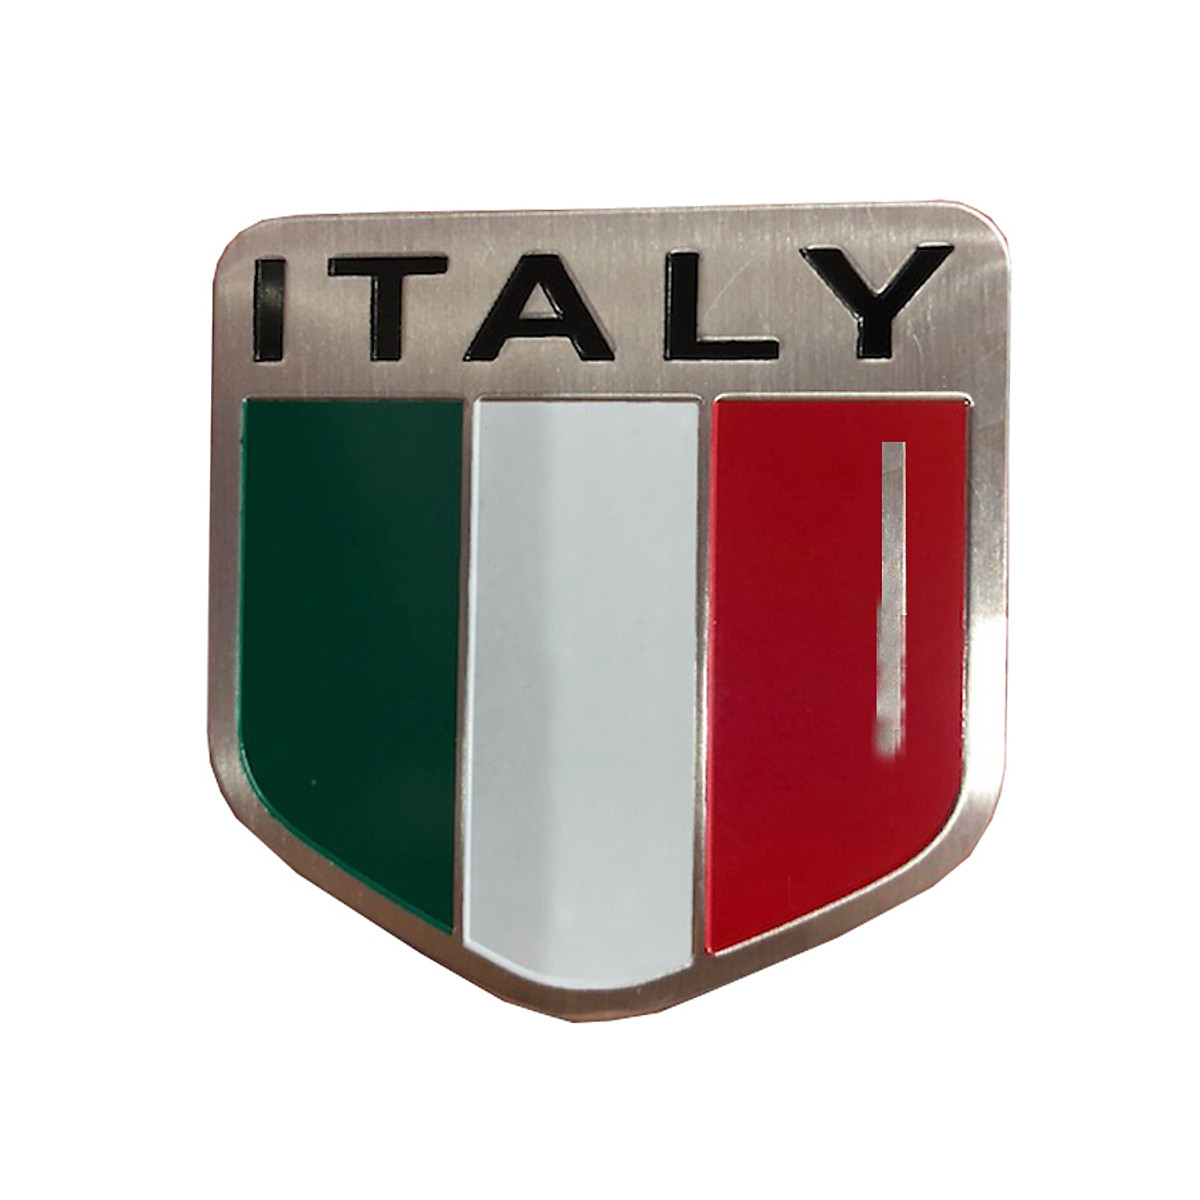 Tem cờ Italia dán trang trí là một trong những cách đơn giản và thu hút để trau trang lại không gian sống của bạn. Với các họa tiết đa dạng và phá cách, tem cờ Italia sẽ làm cho không gian nhà bạn trở nên tươi mới và đầy sức sống. Hãy cùng trải nghiệm những ý tưởng trang trí mới lạ với tem cờ Italia!